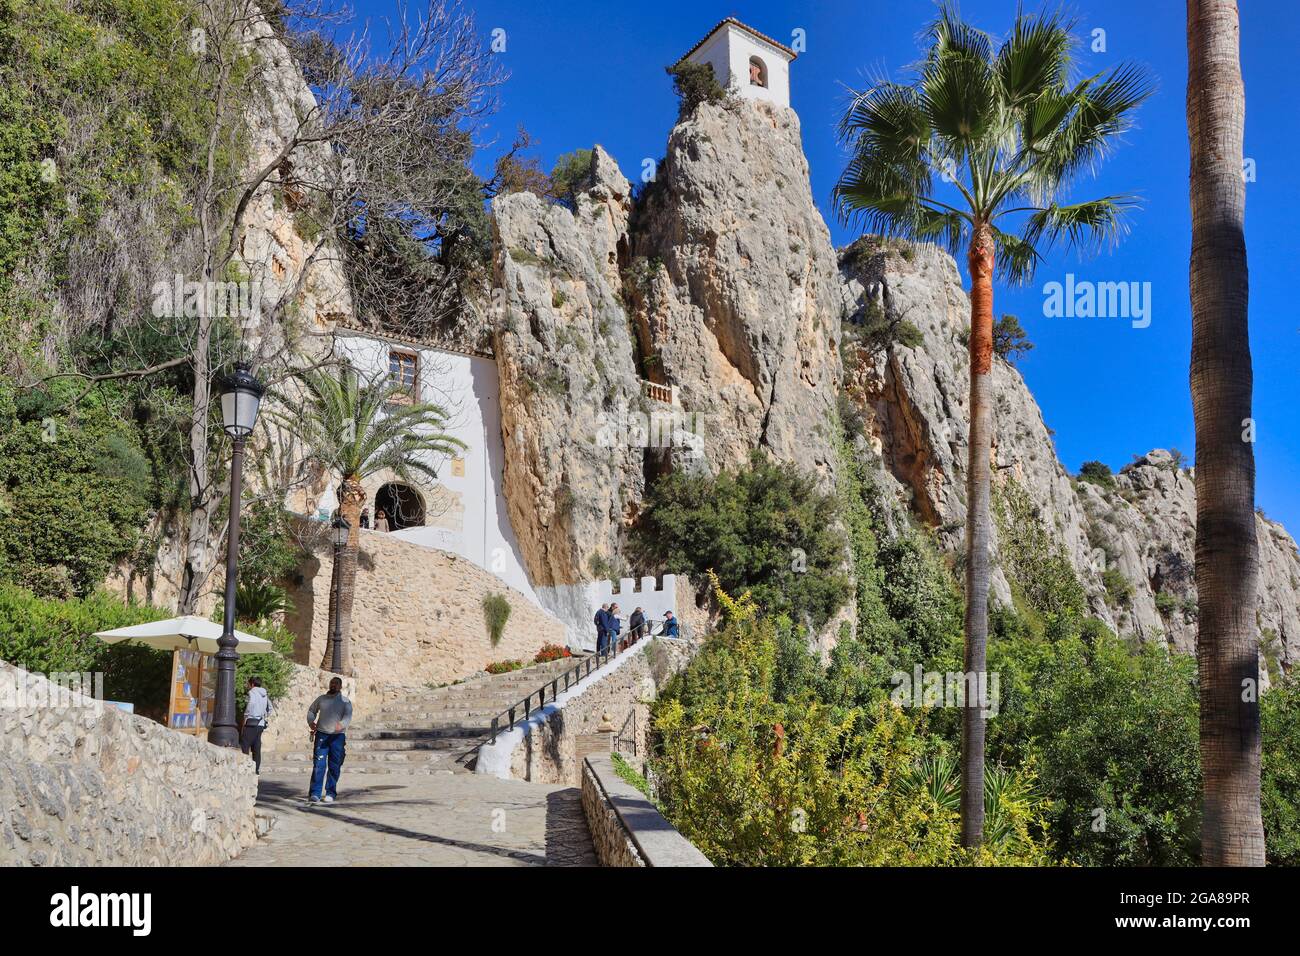 Das Dorf Guadalest liegt in der Provinz Alicante in der Region Valencia und Murcia, Spanien. Dies ist der Weg hinauf zum Eingang in den Berg Stockfoto